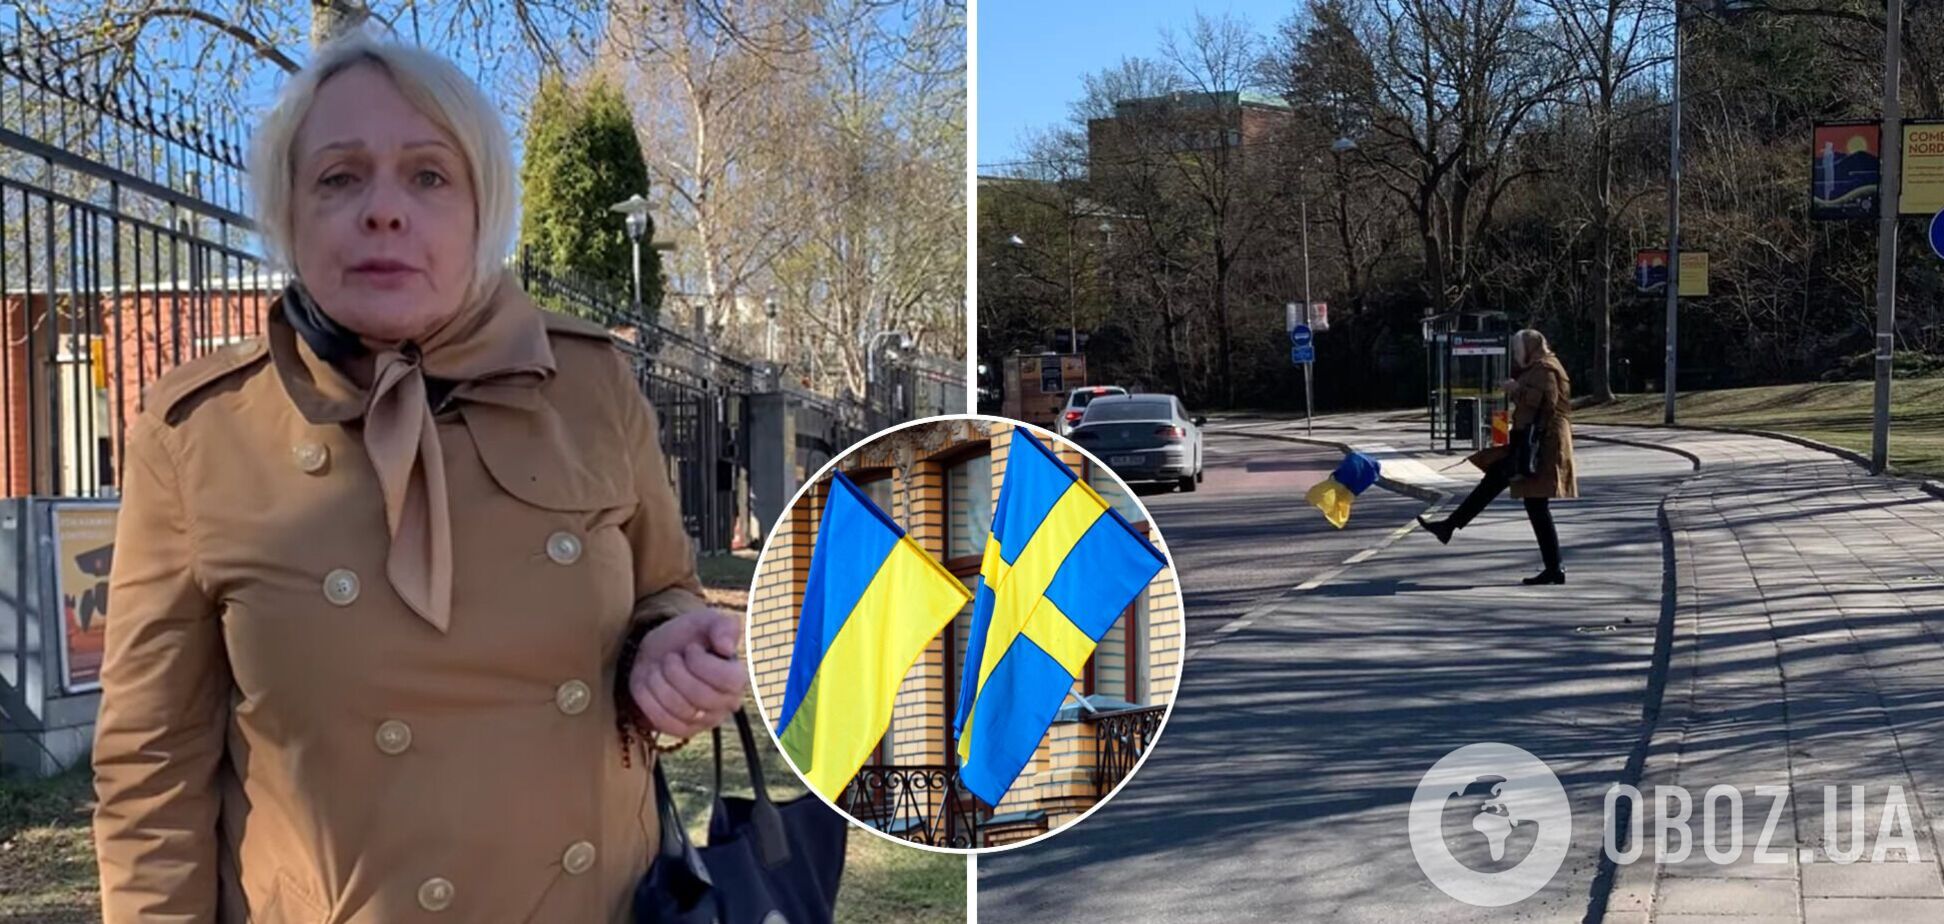 Посольство Украины отреагировало на ролик с унижавшей украинцев россиянкой в Швеции: дело уже в полиции